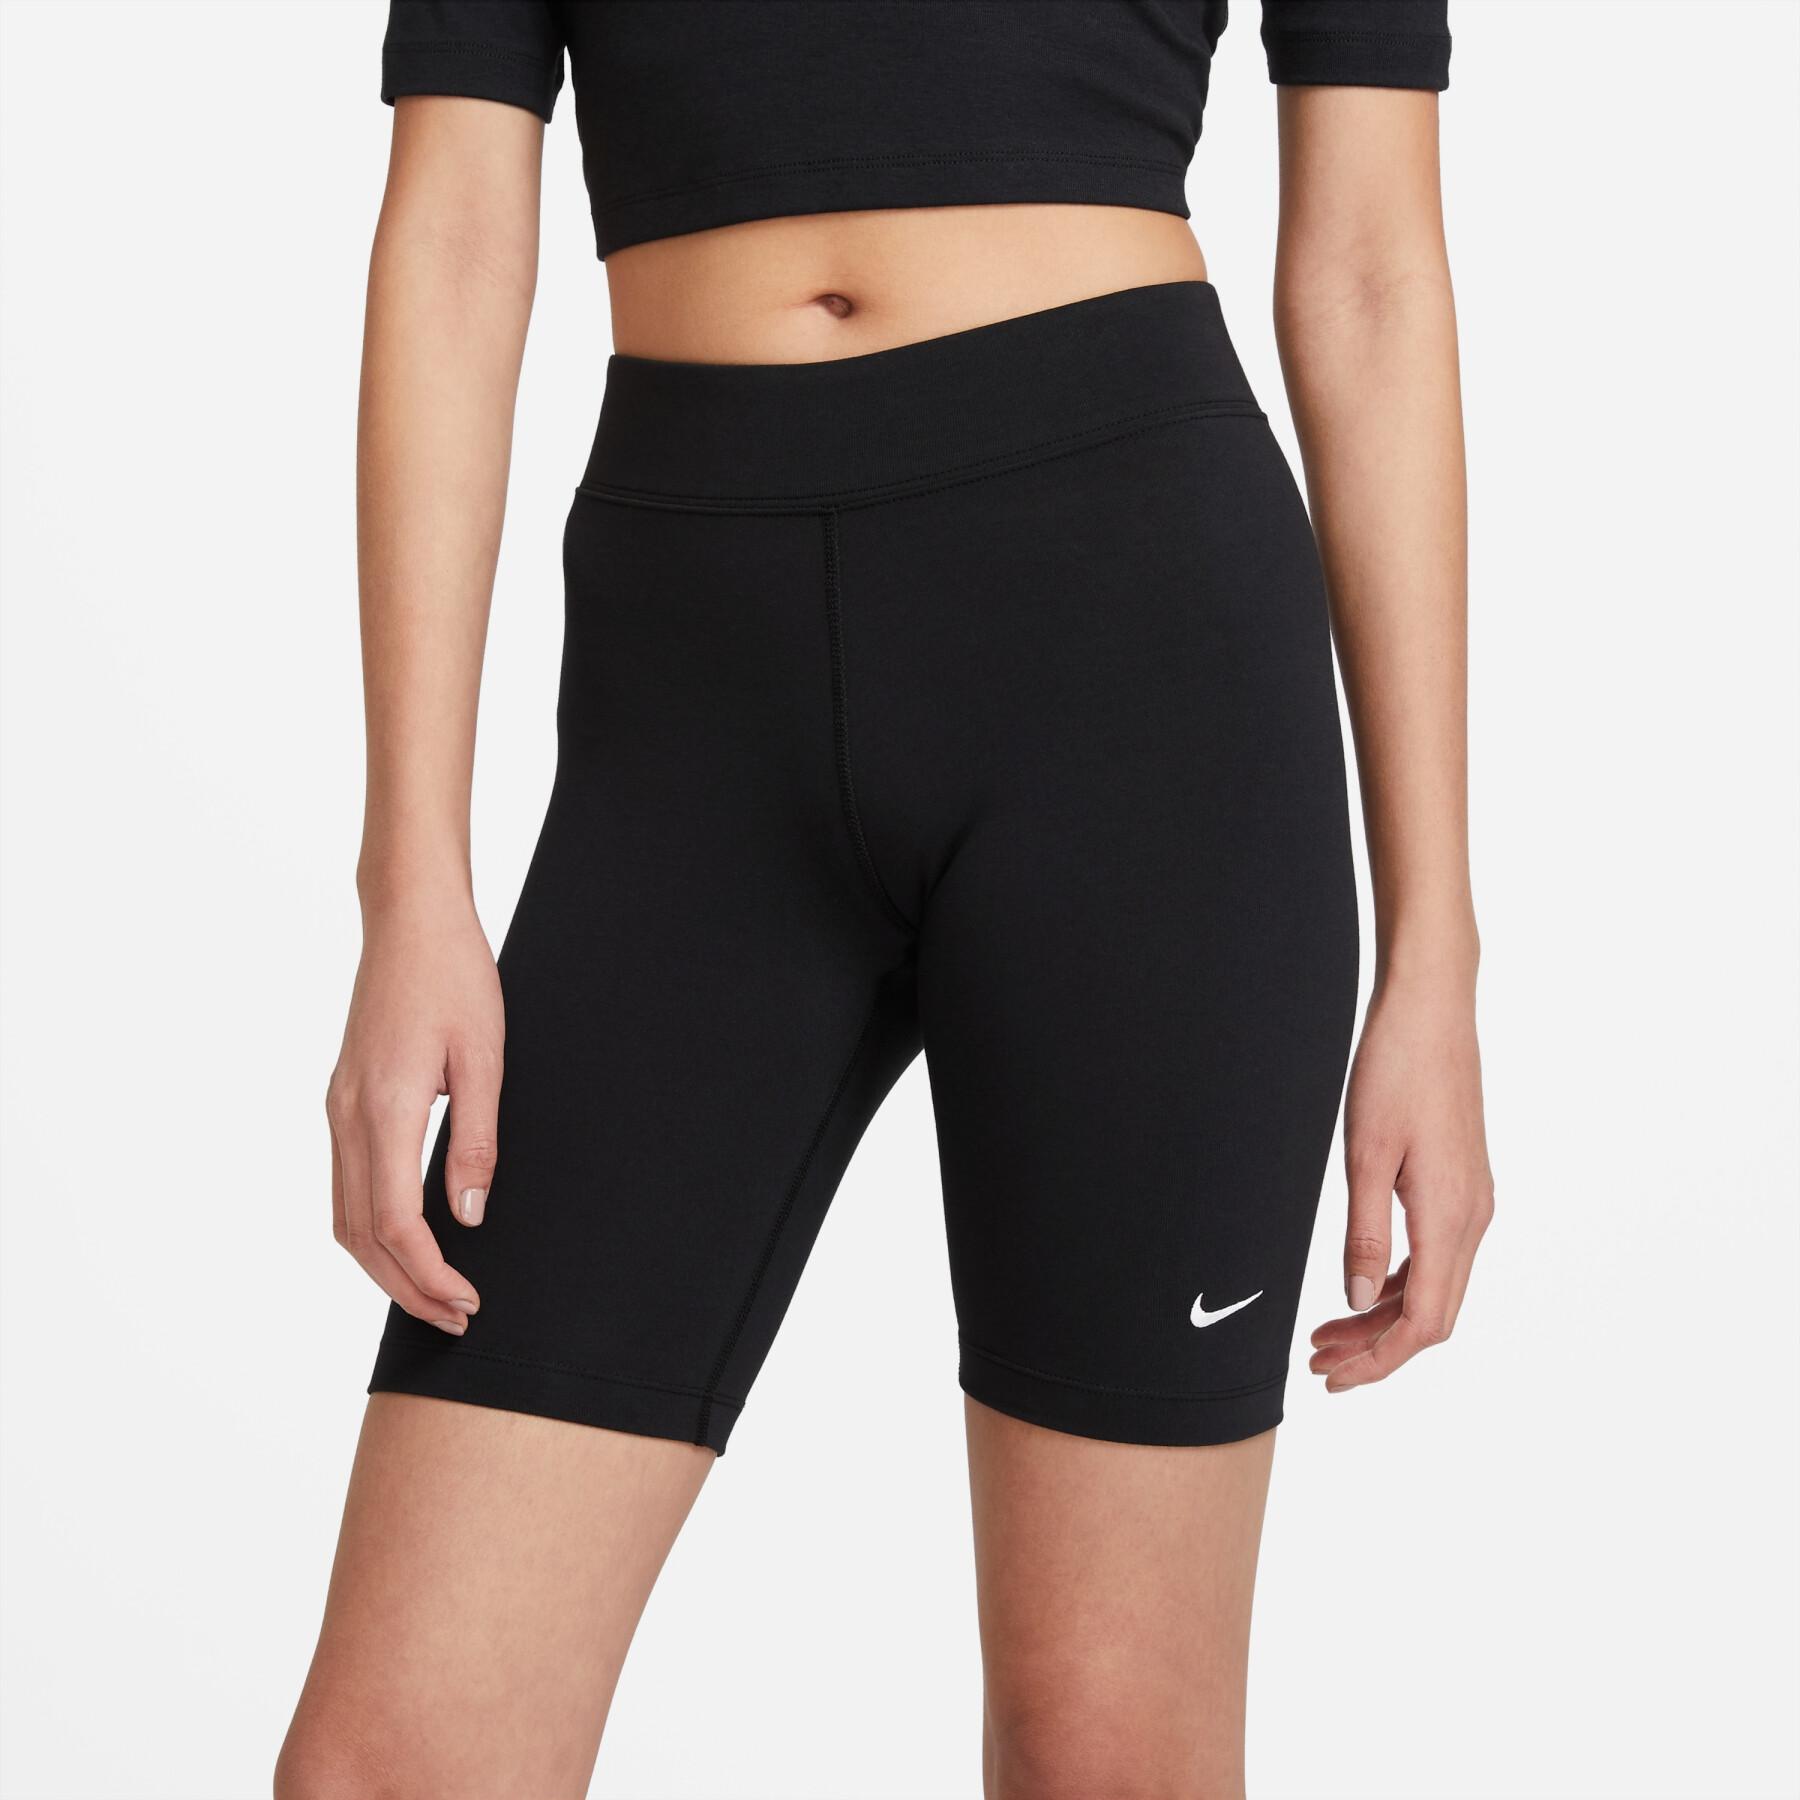 Calções para mulheres Nike sportswear essential